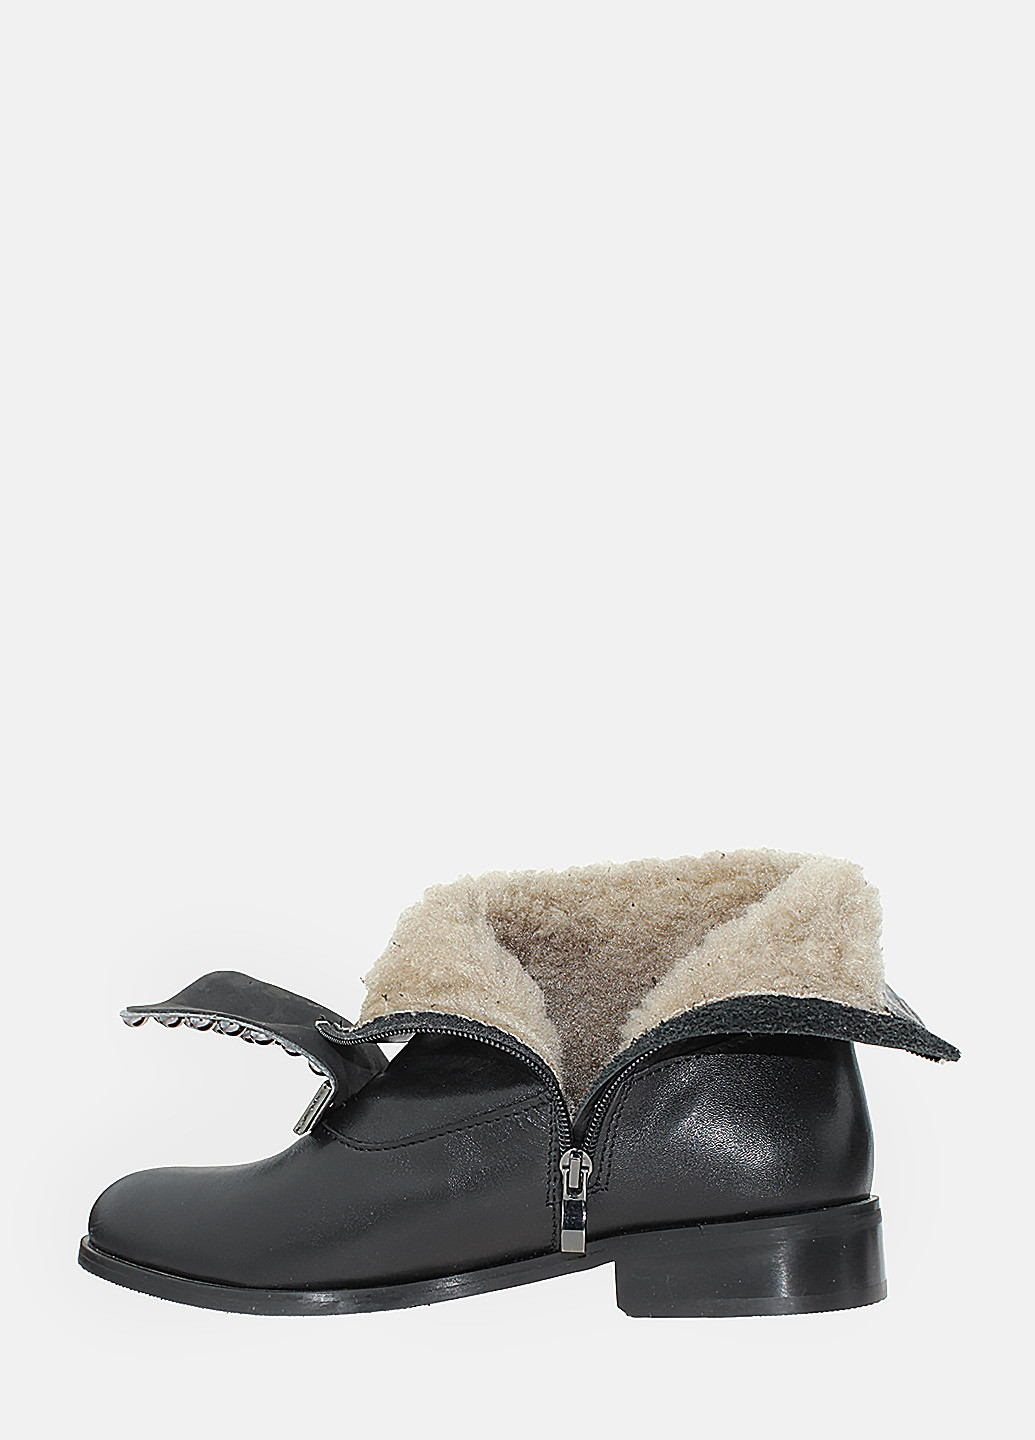 Зимние ботинки rb59628 черный Brionis